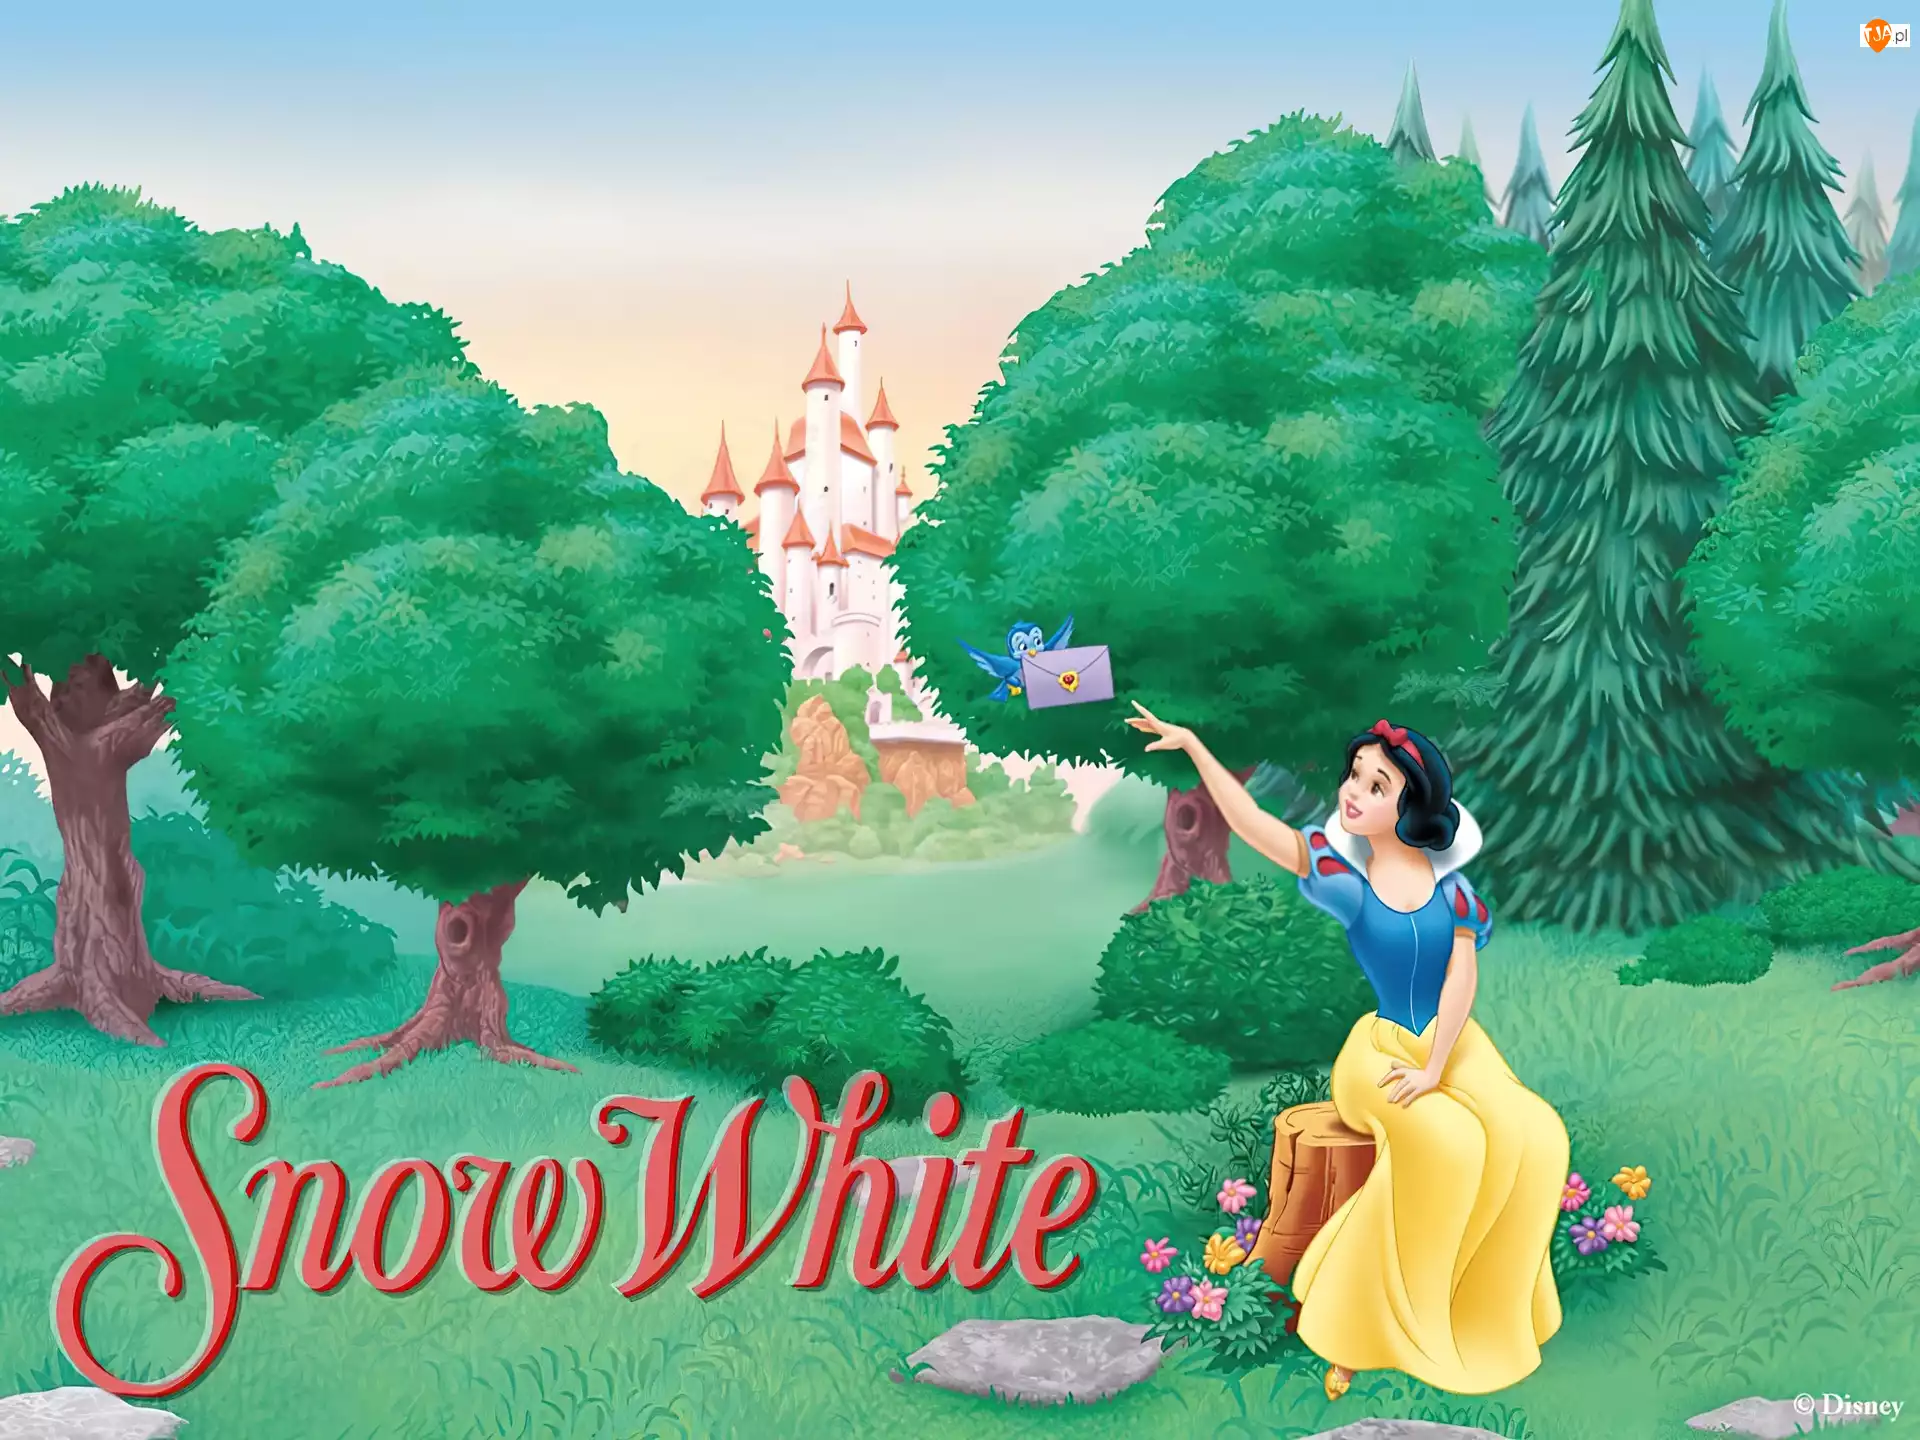 Snow White and the Seven Dwarfs, Królewna Śnieżka i siedmiu krasnoludków